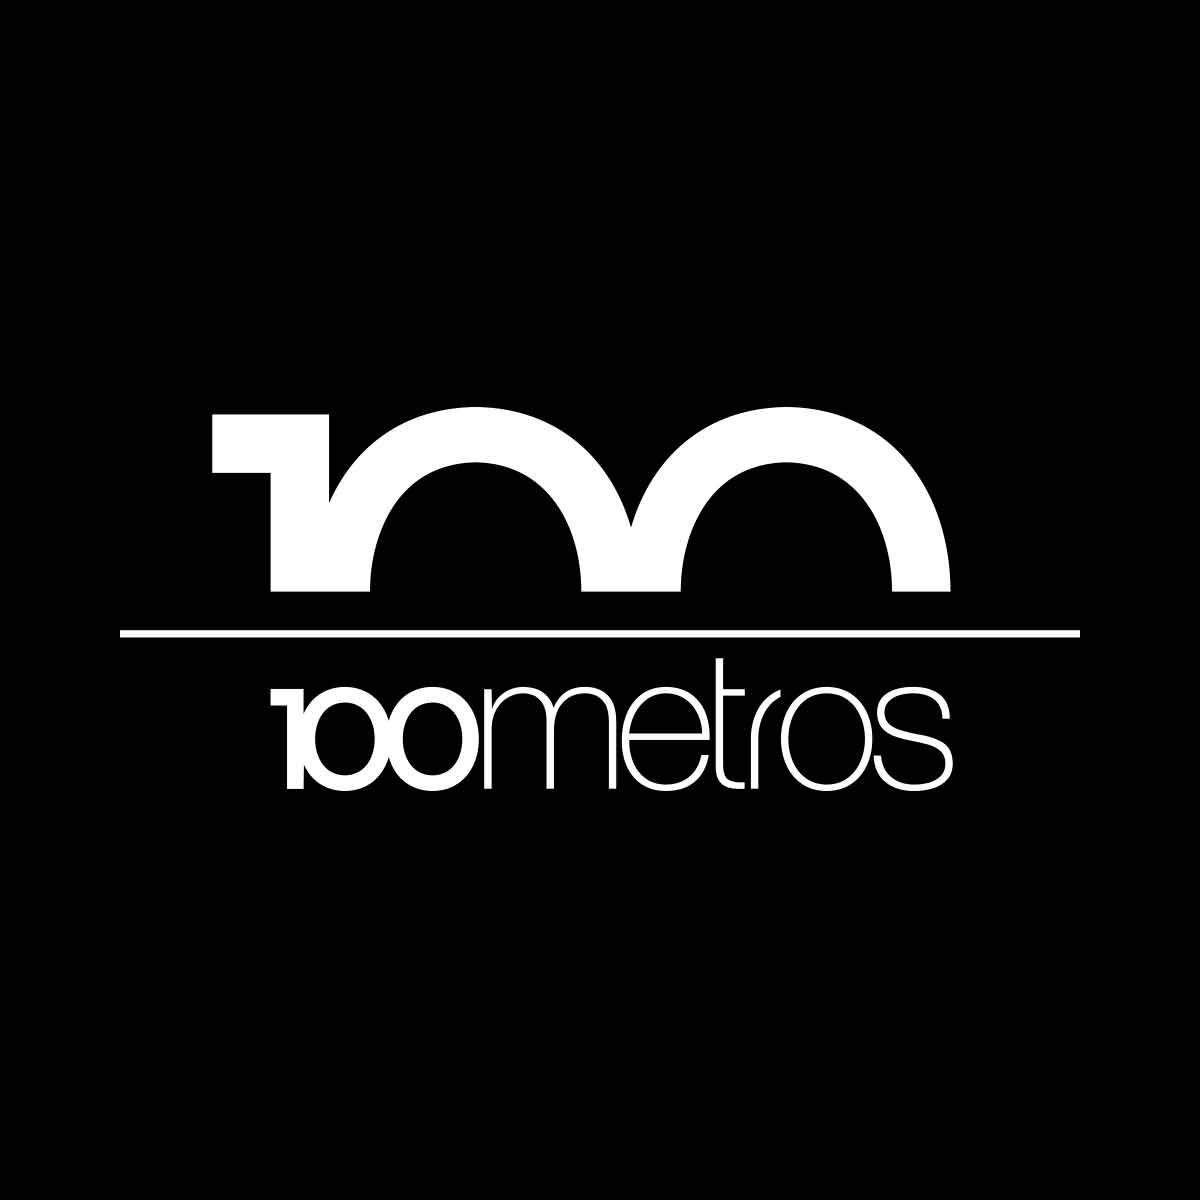 100 Metros